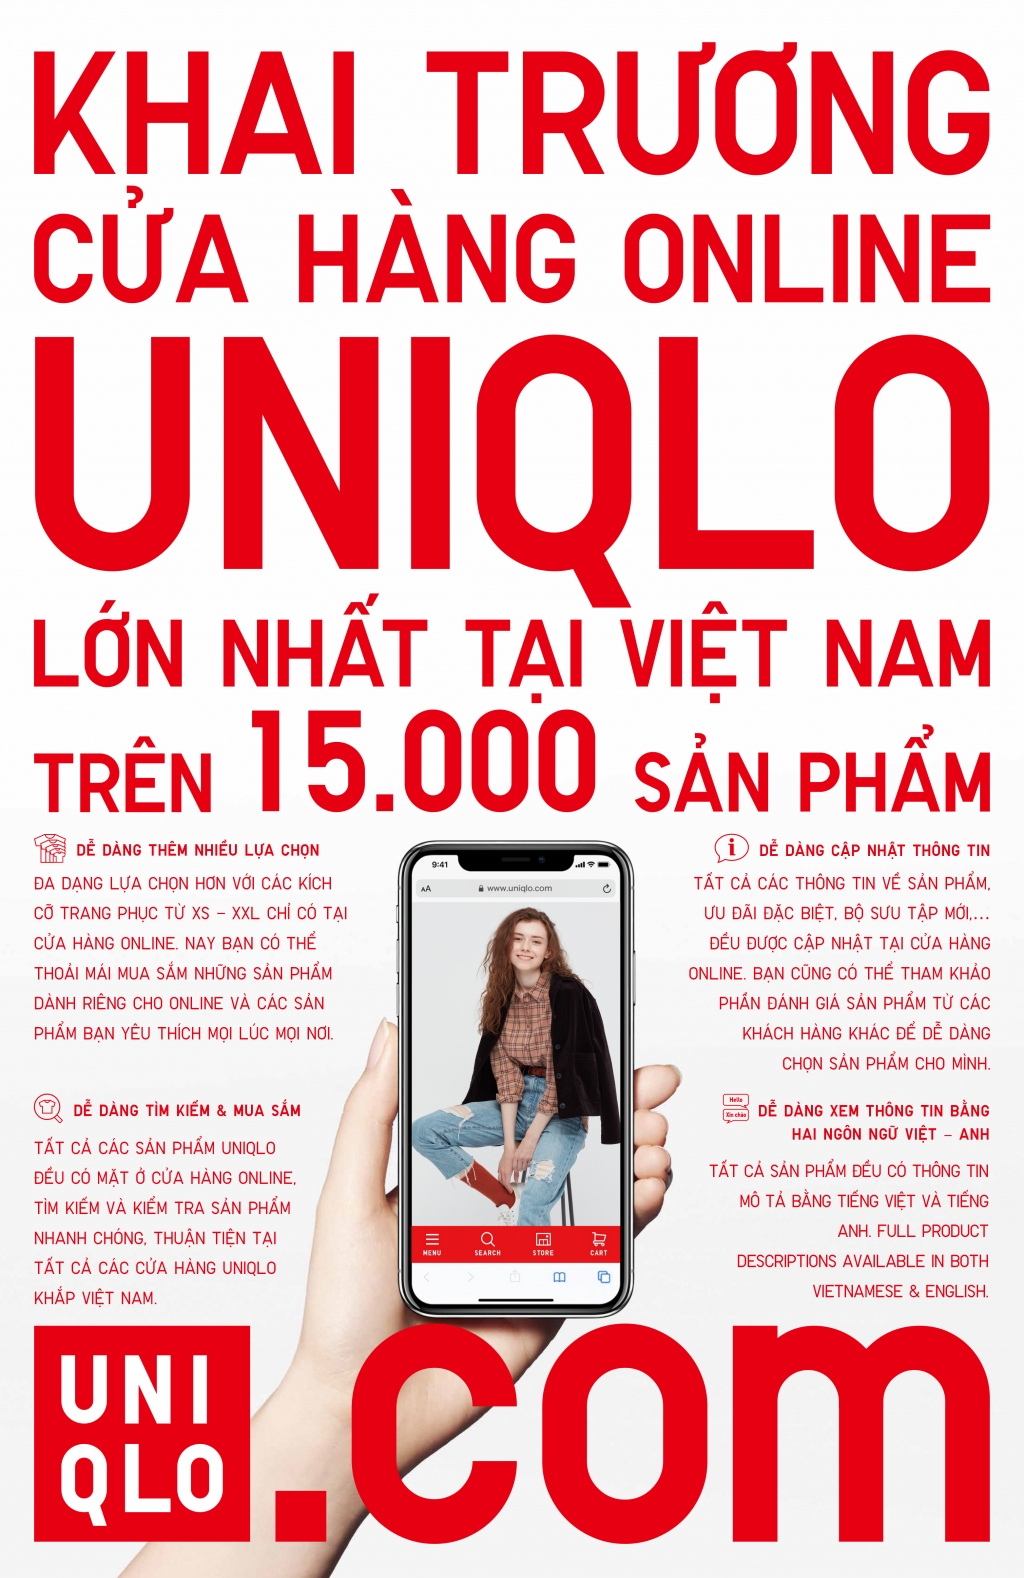 UNIQLO chính thức ra mắt cửa hàng UNIQLO online ngày 5_11